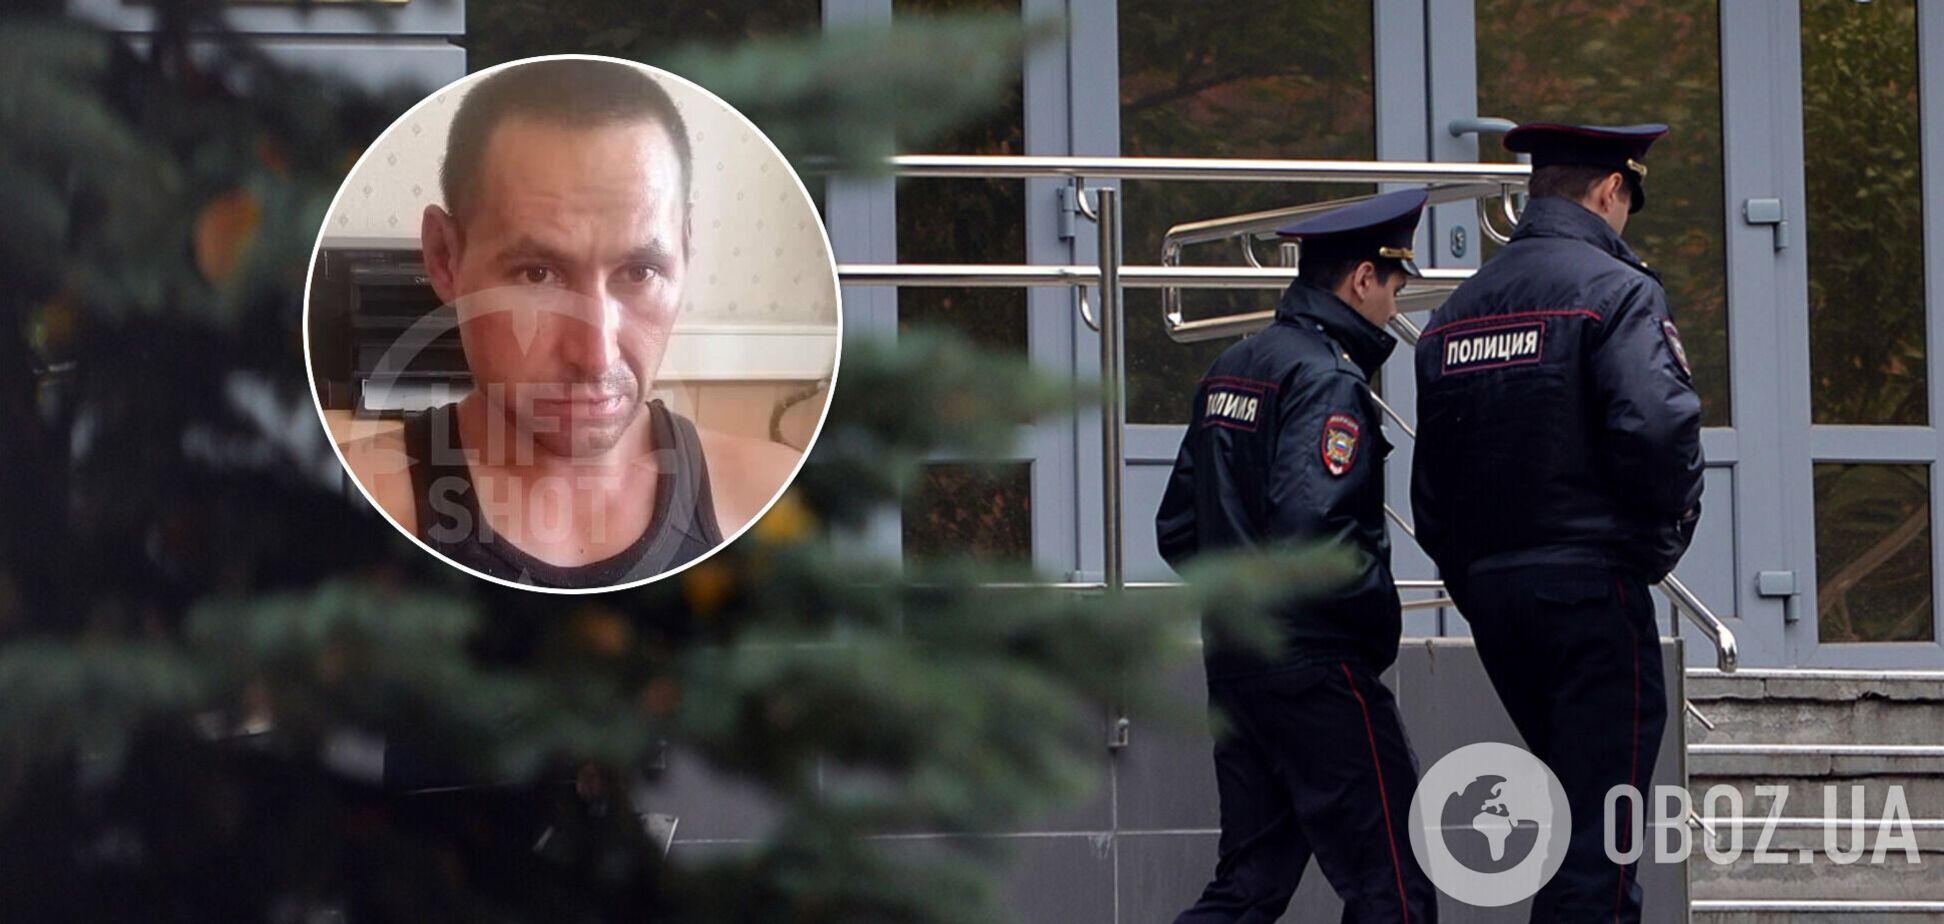 В России мужчина из-за ревности убил семью из пяти человек. Фото и детали трагедии